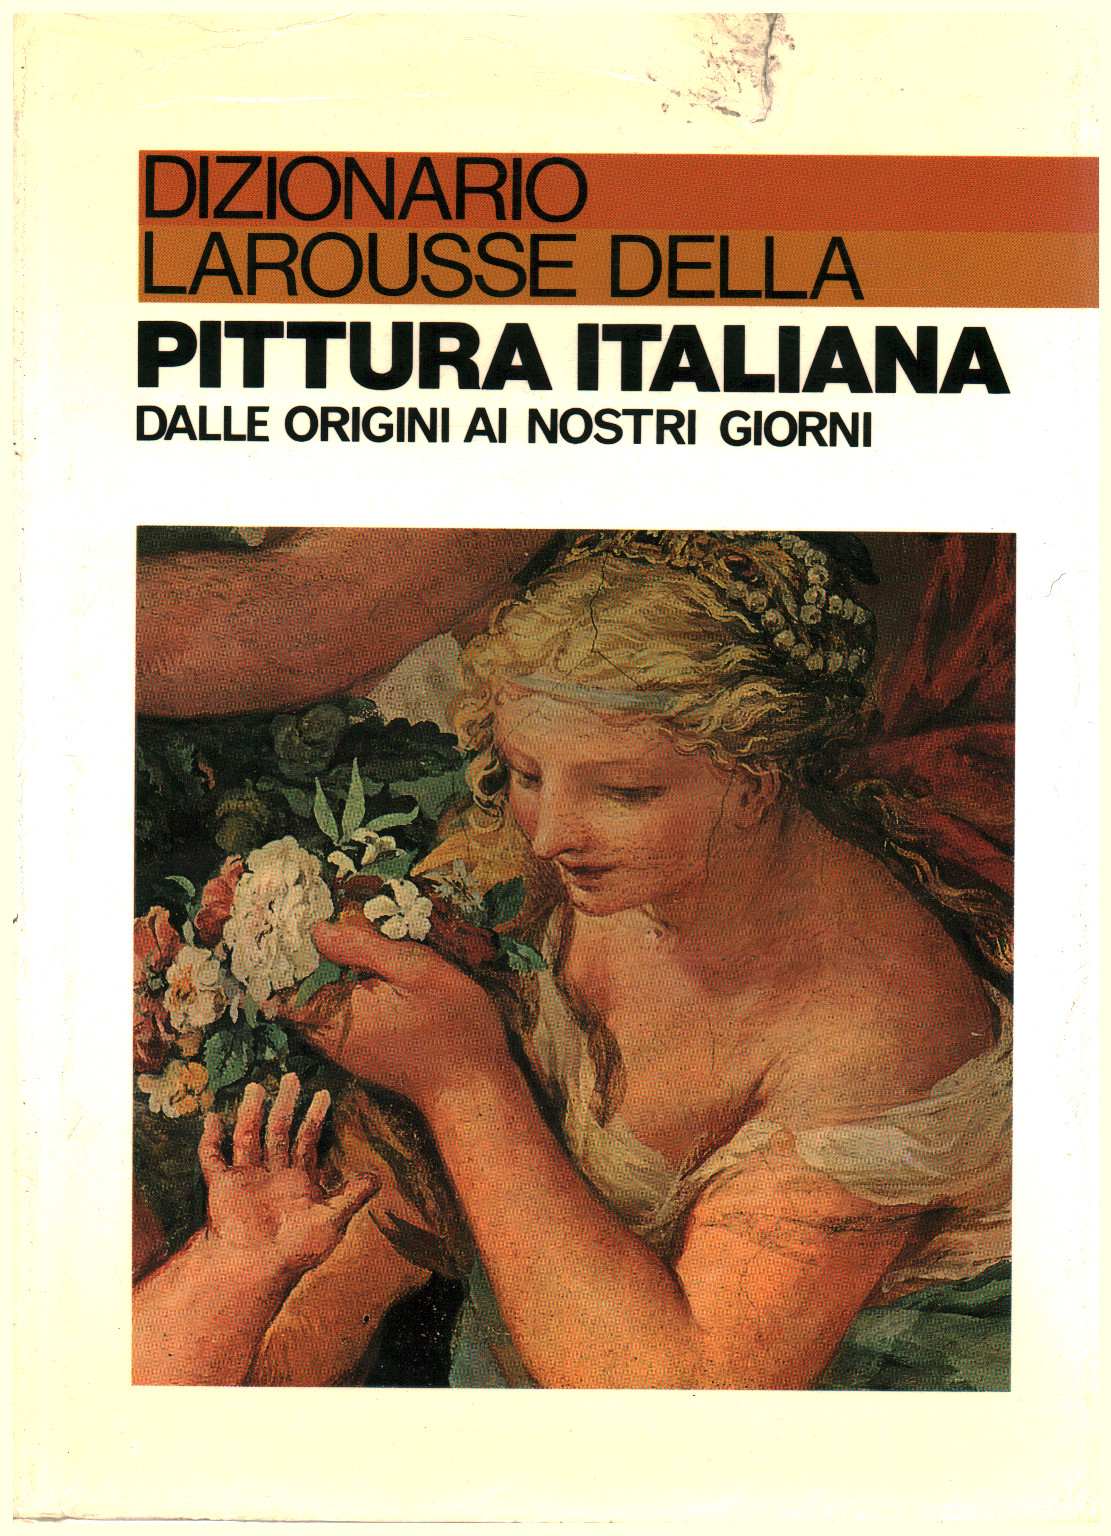 Dizionario Larousse della pittura italiana, s.a.